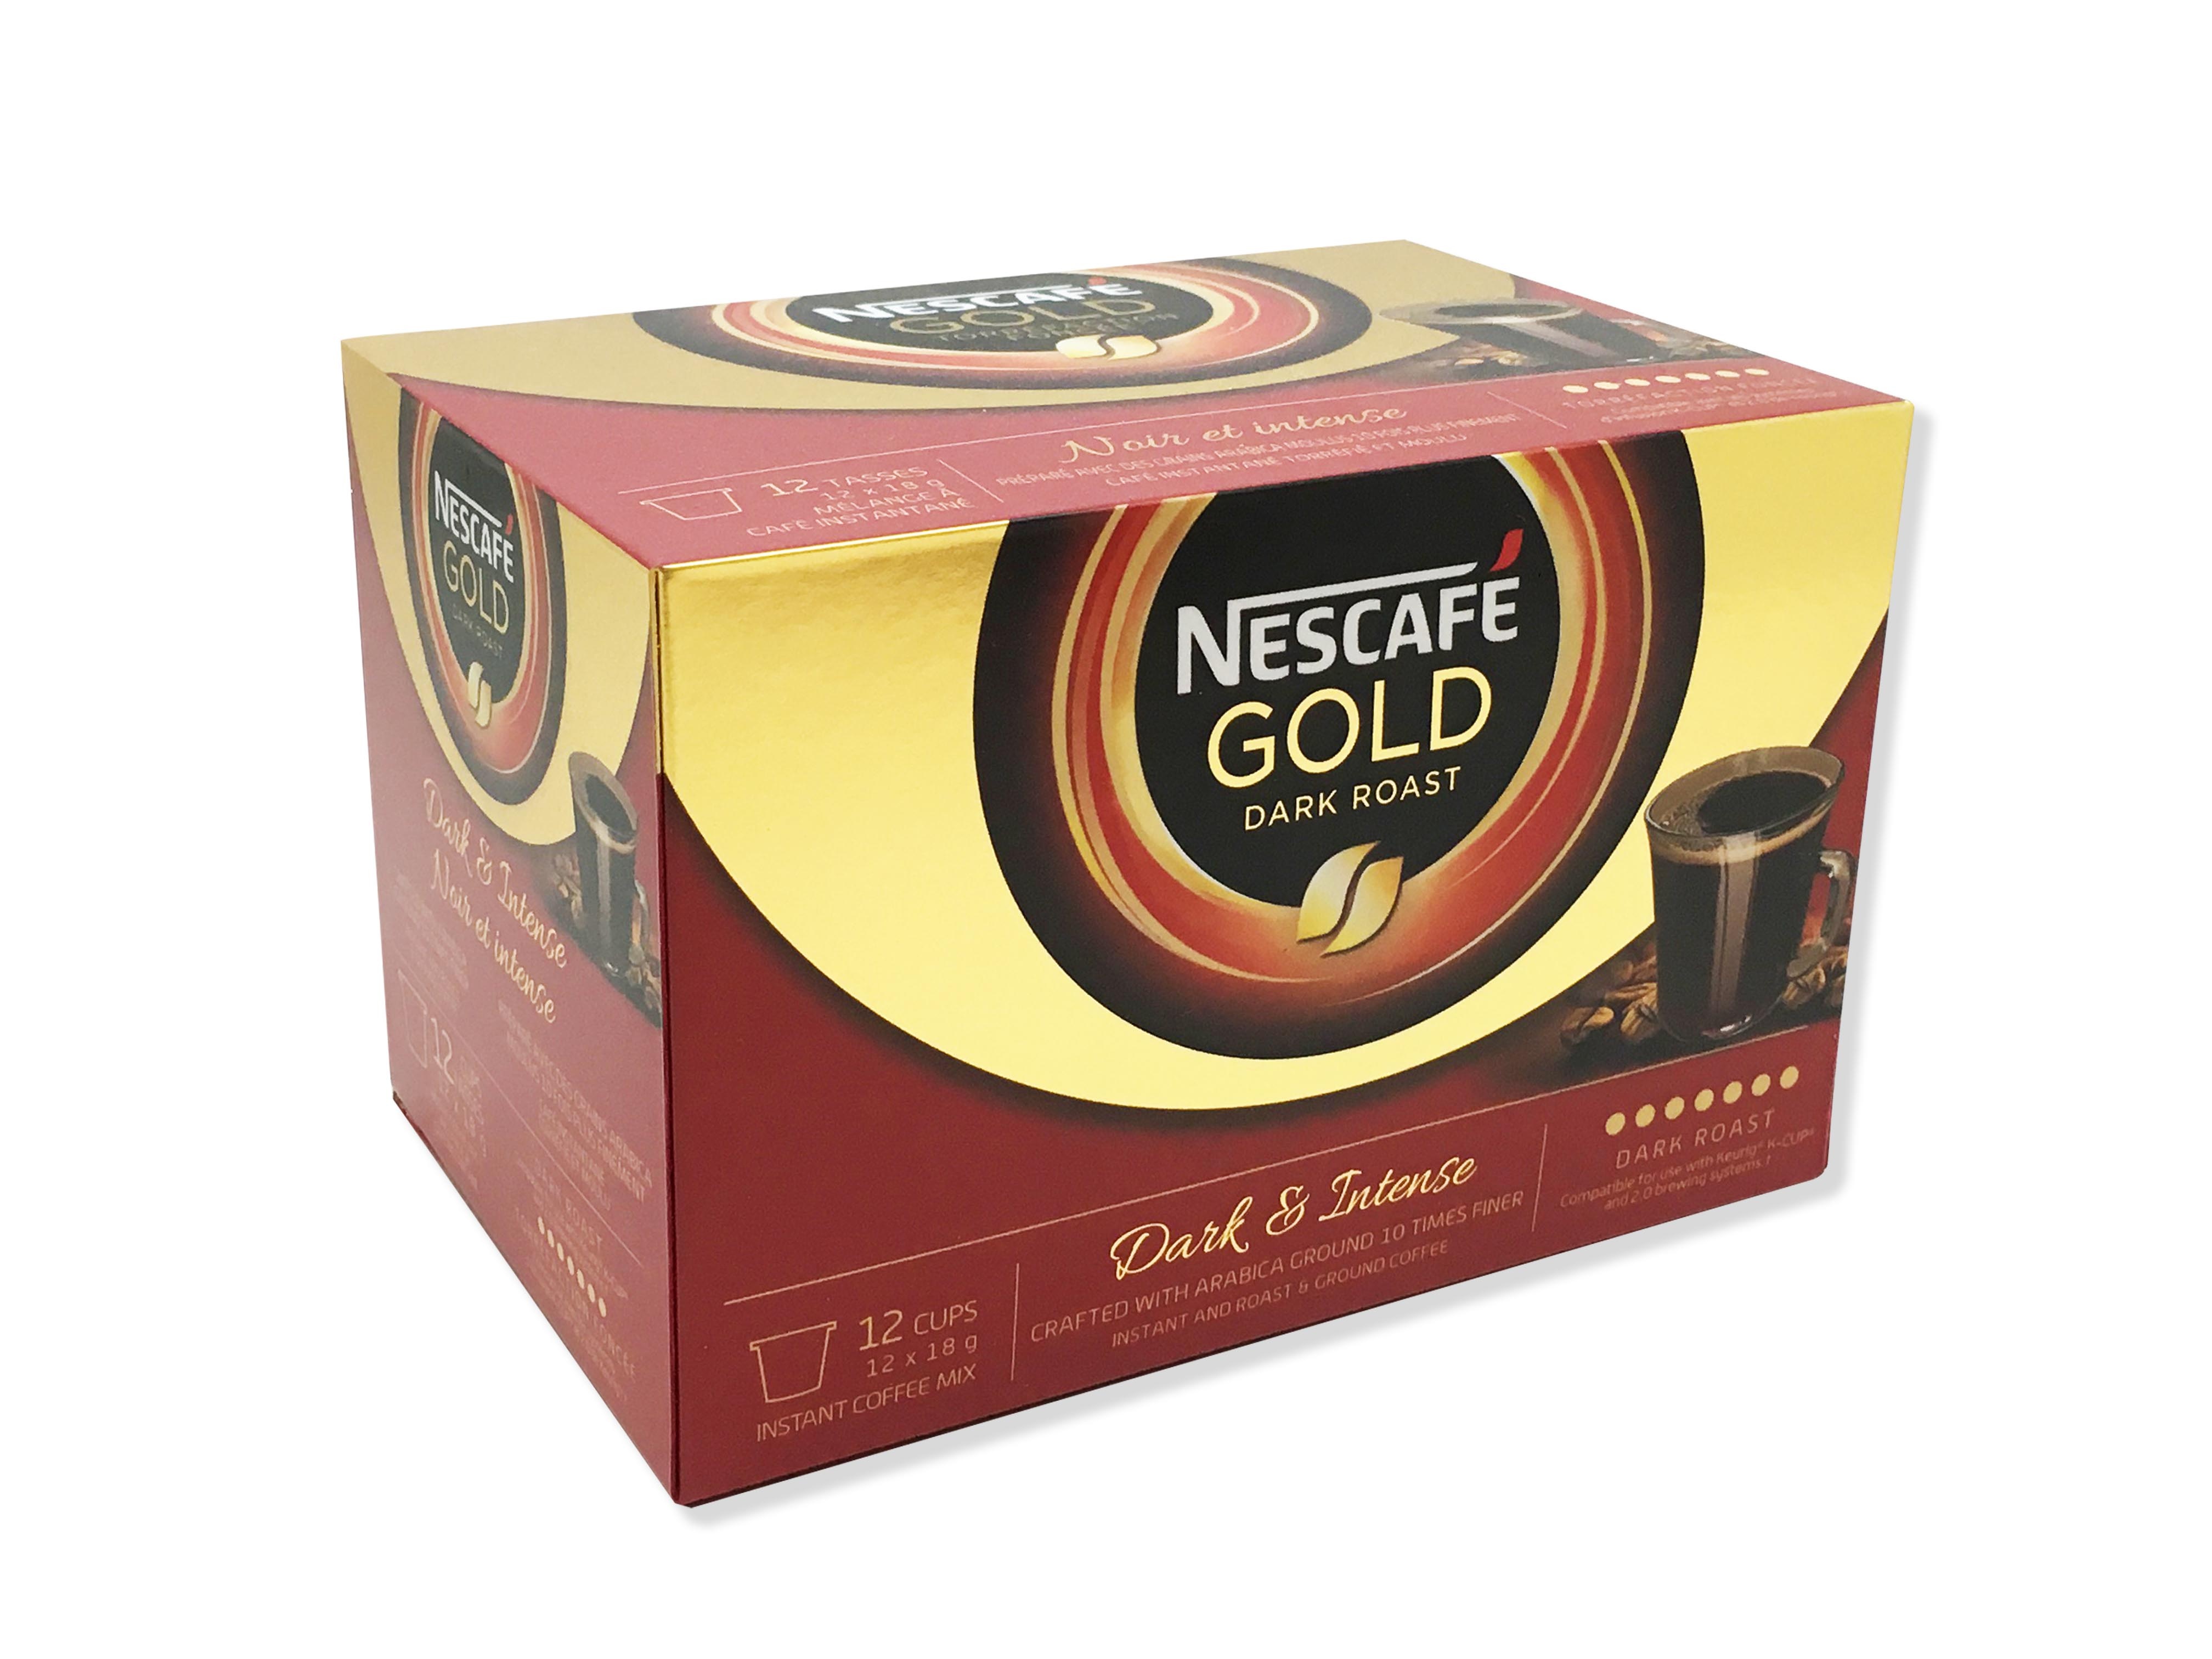 https://0901.nccdn.net/4_2/000/000/046/6ea/Nescafe-gold-cafe-box-4032x3024.jpg